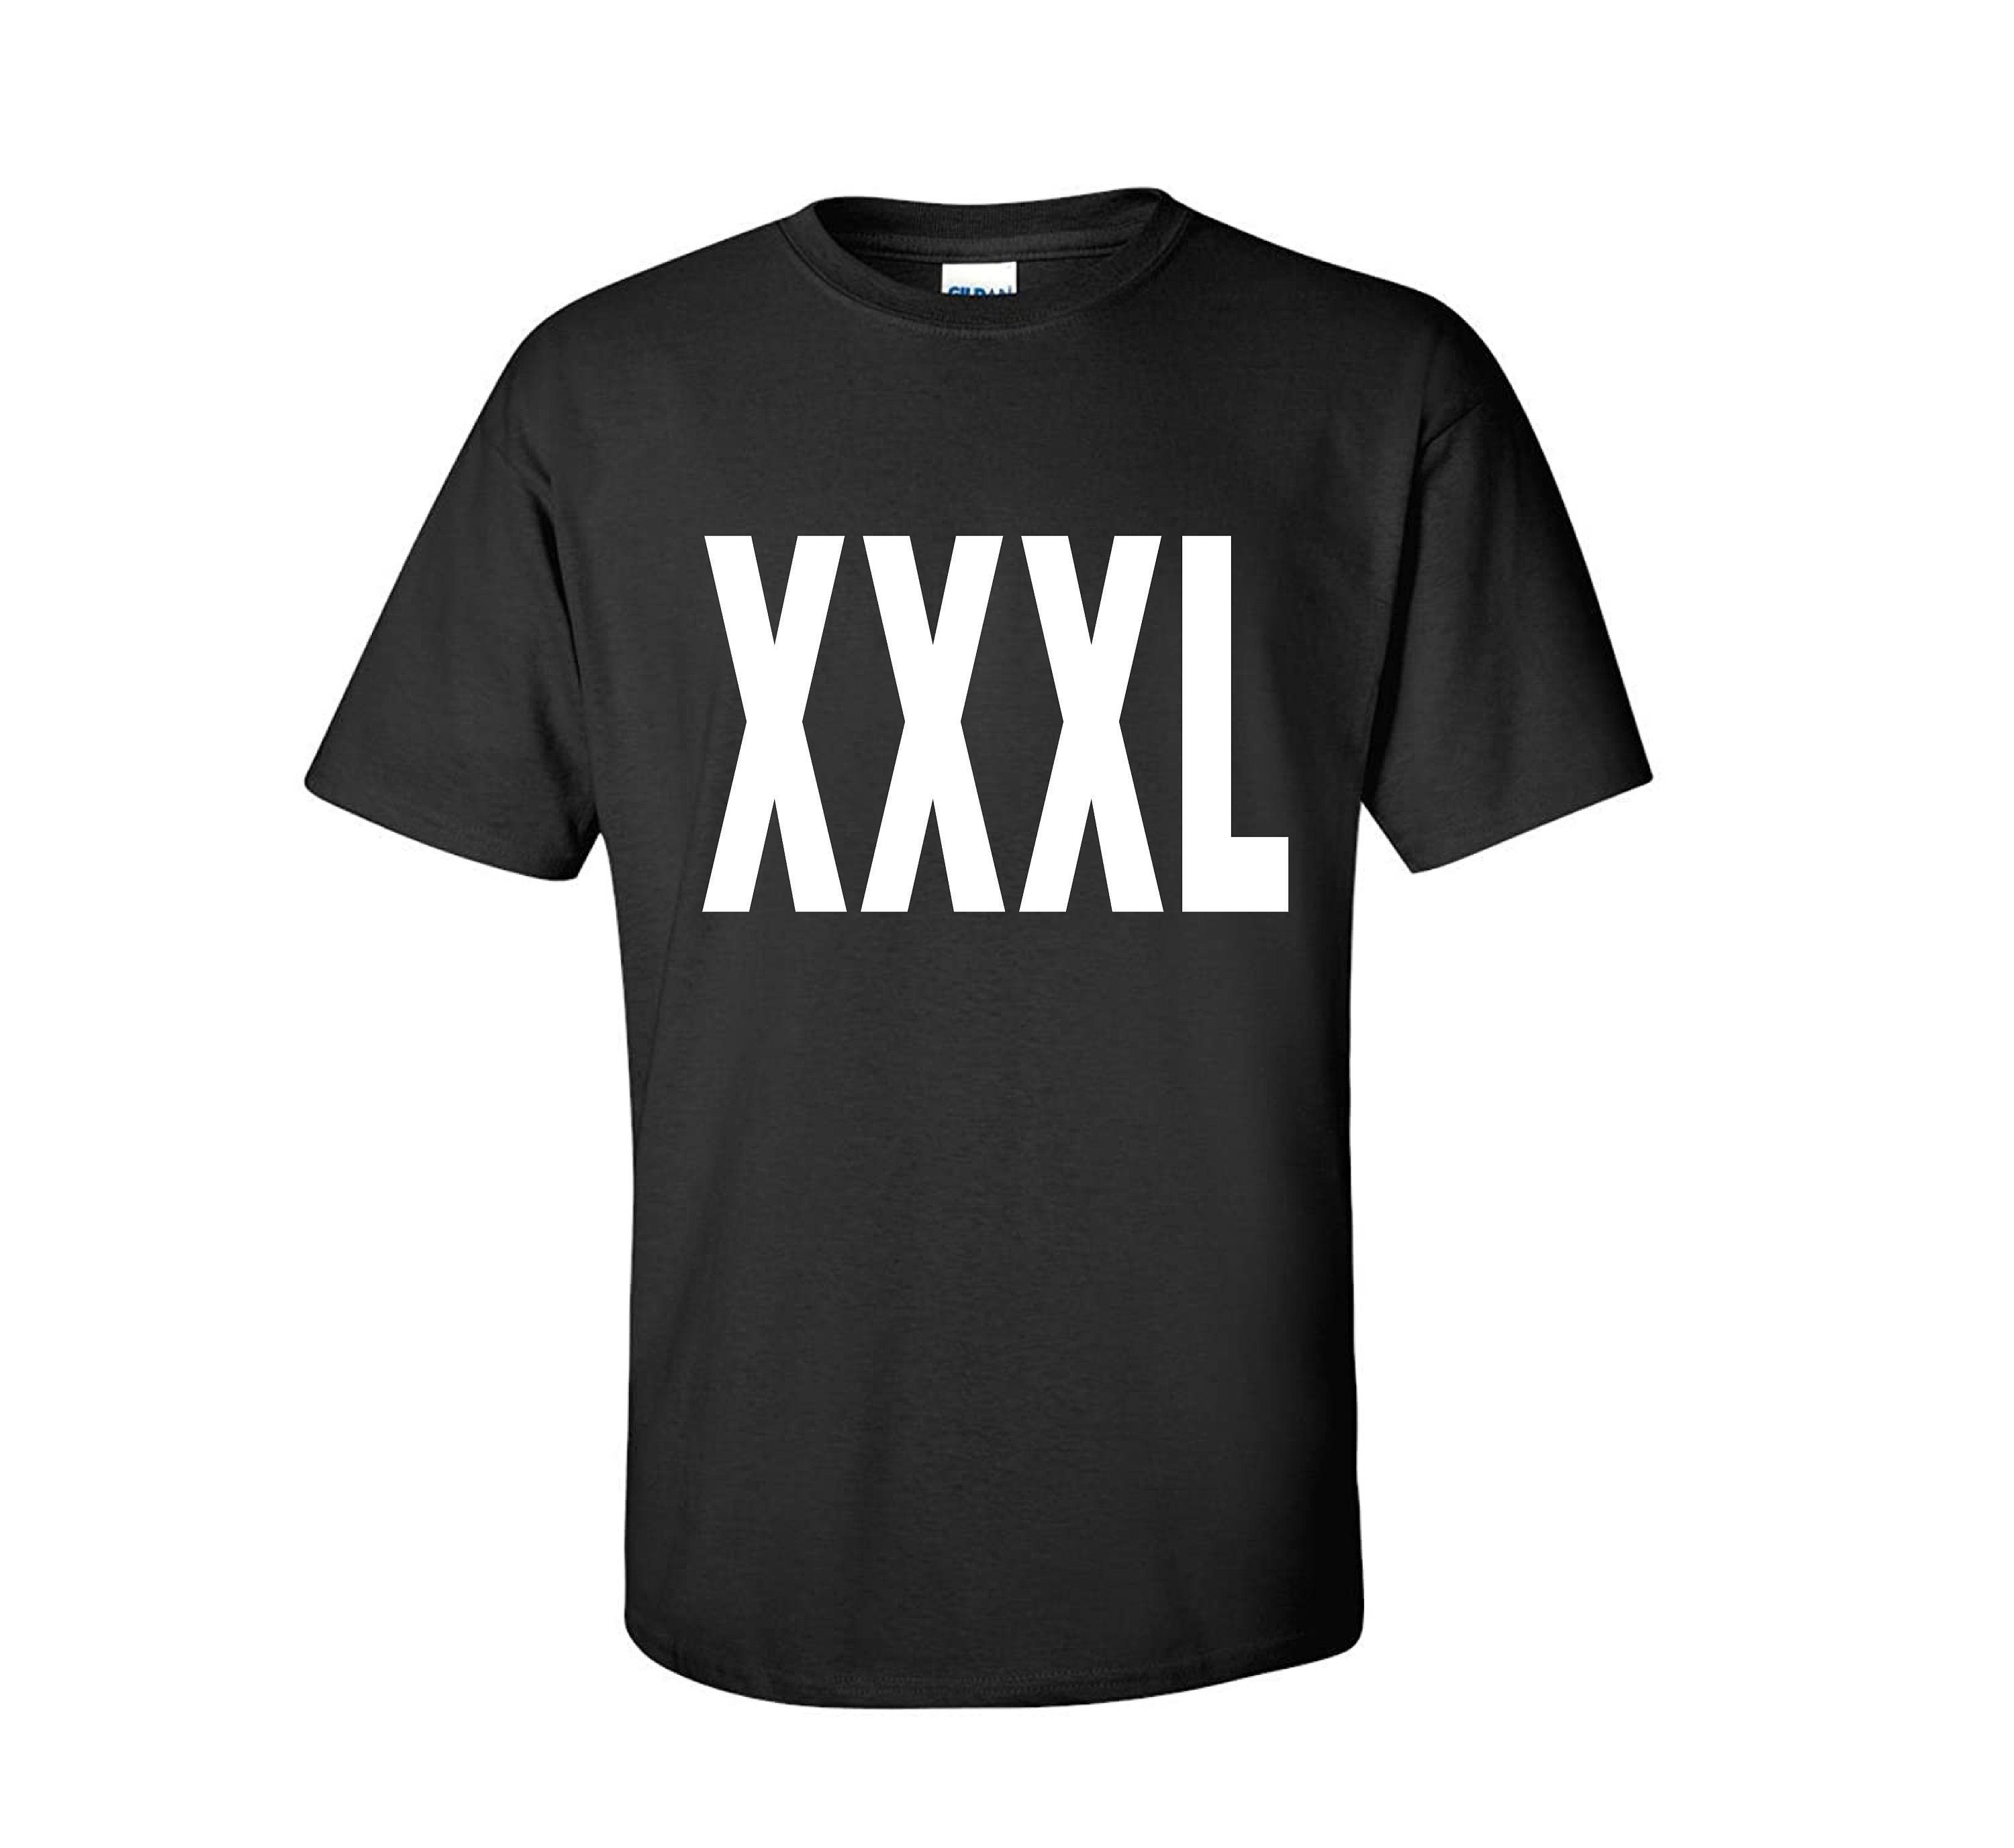 Xxxl T Shirt Etsy